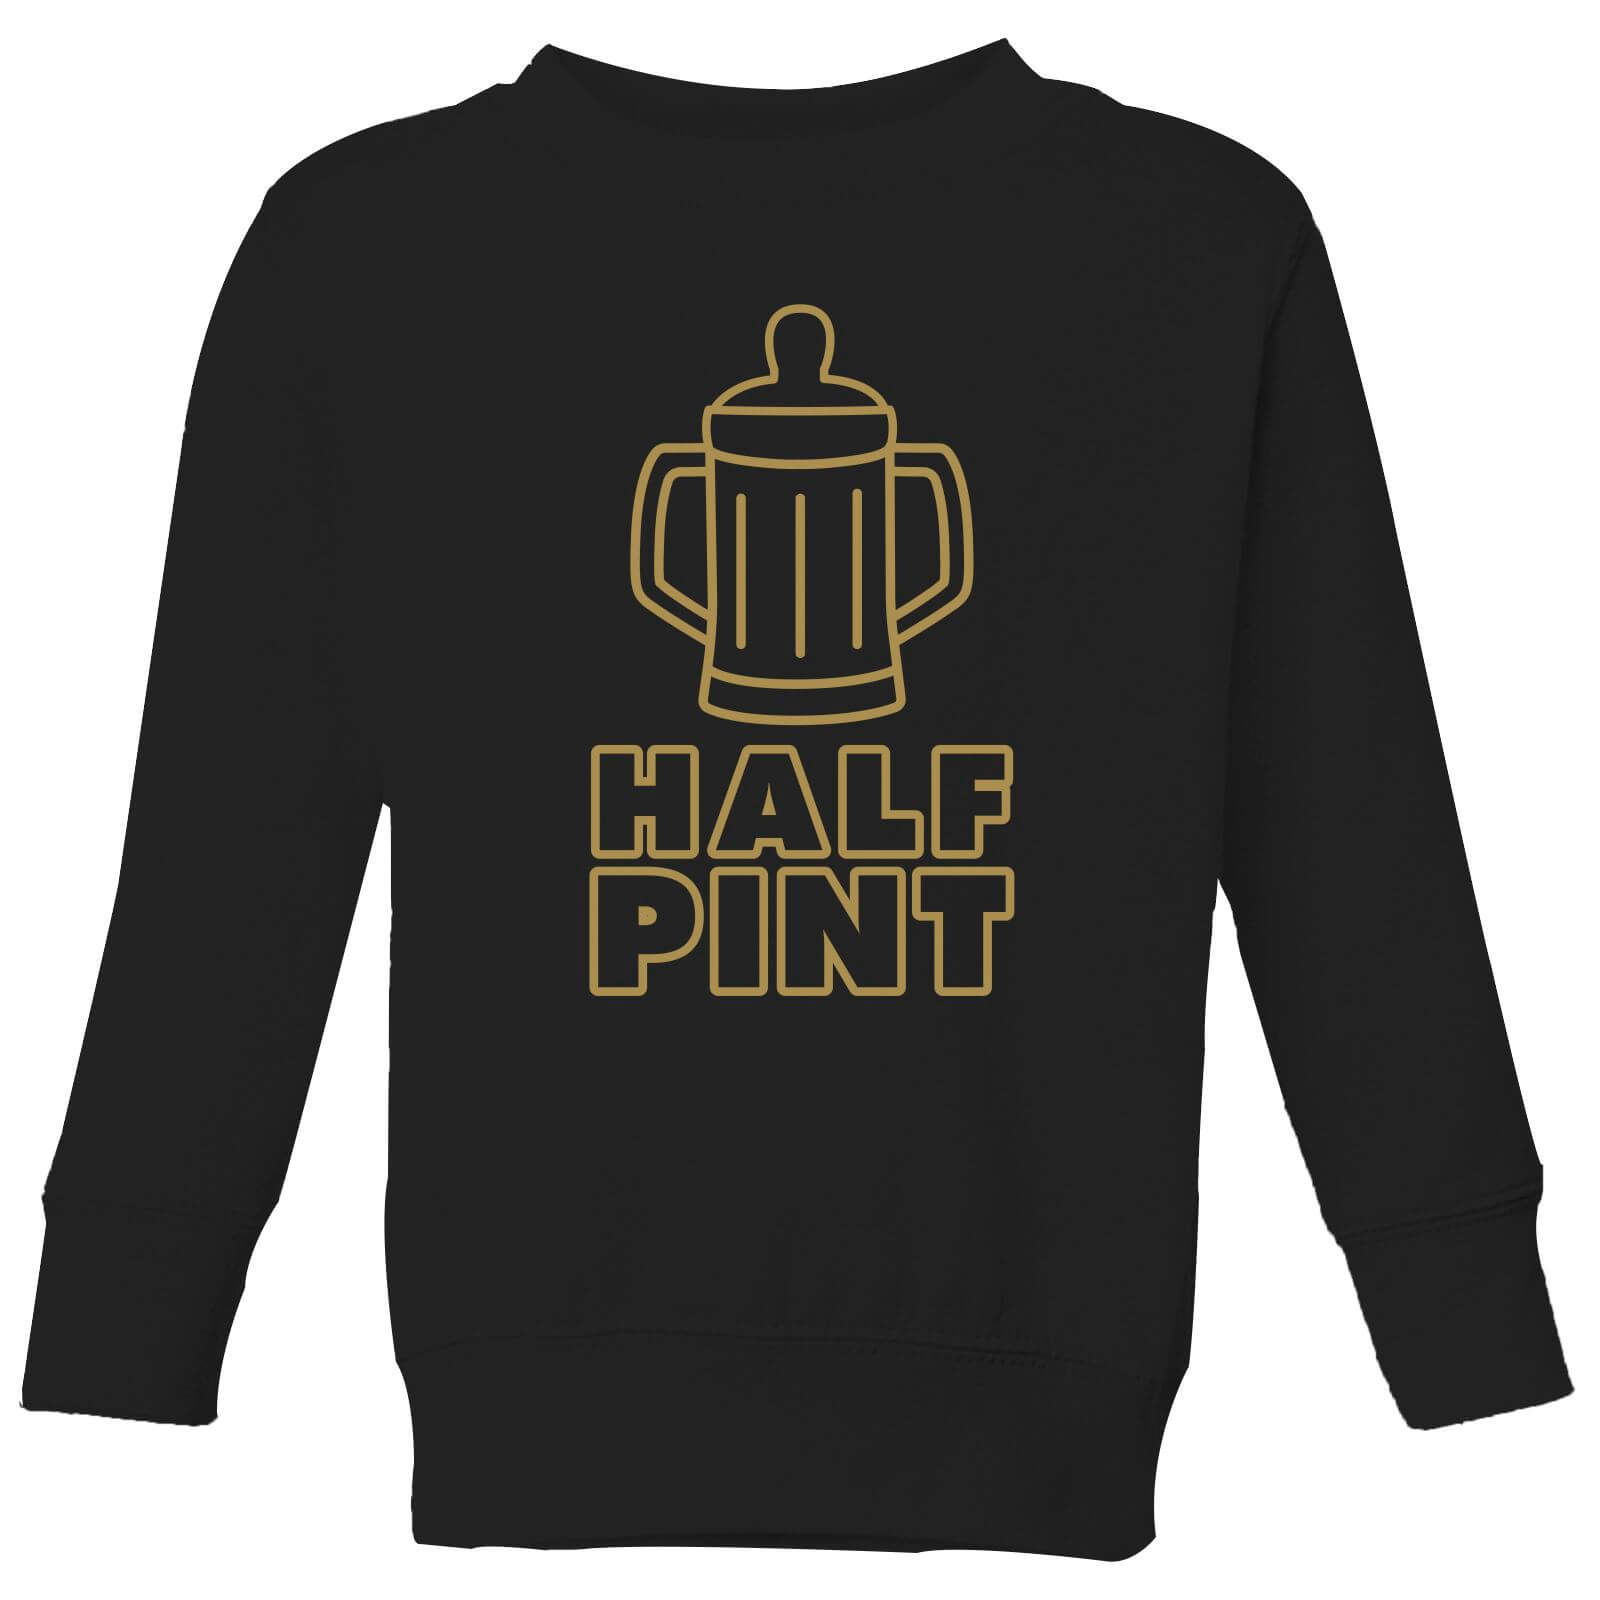 Half Pint Kids' Sweatshirt - Black - 3-4 Years - Black